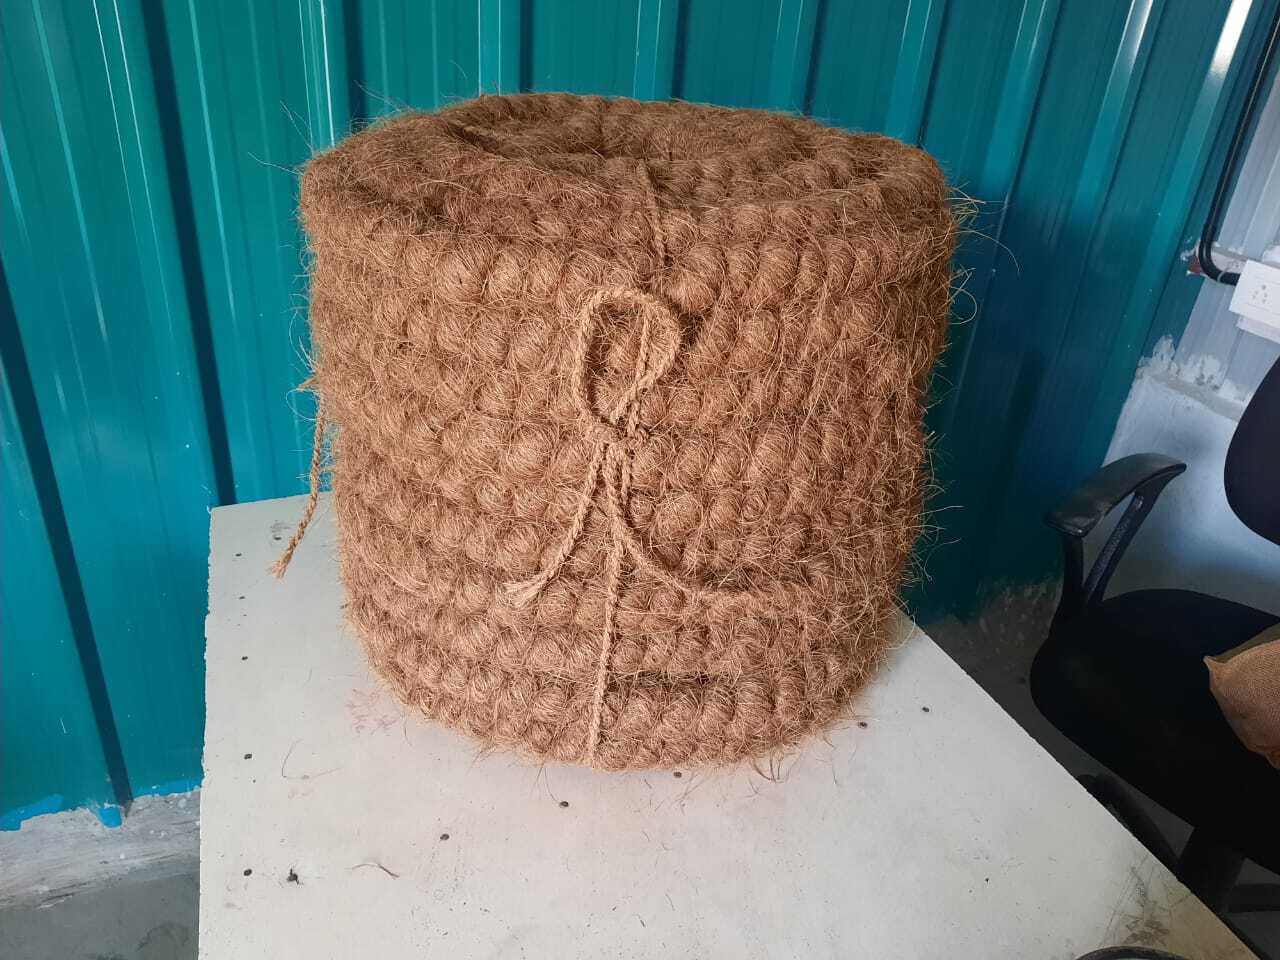 Coconut fiber curling